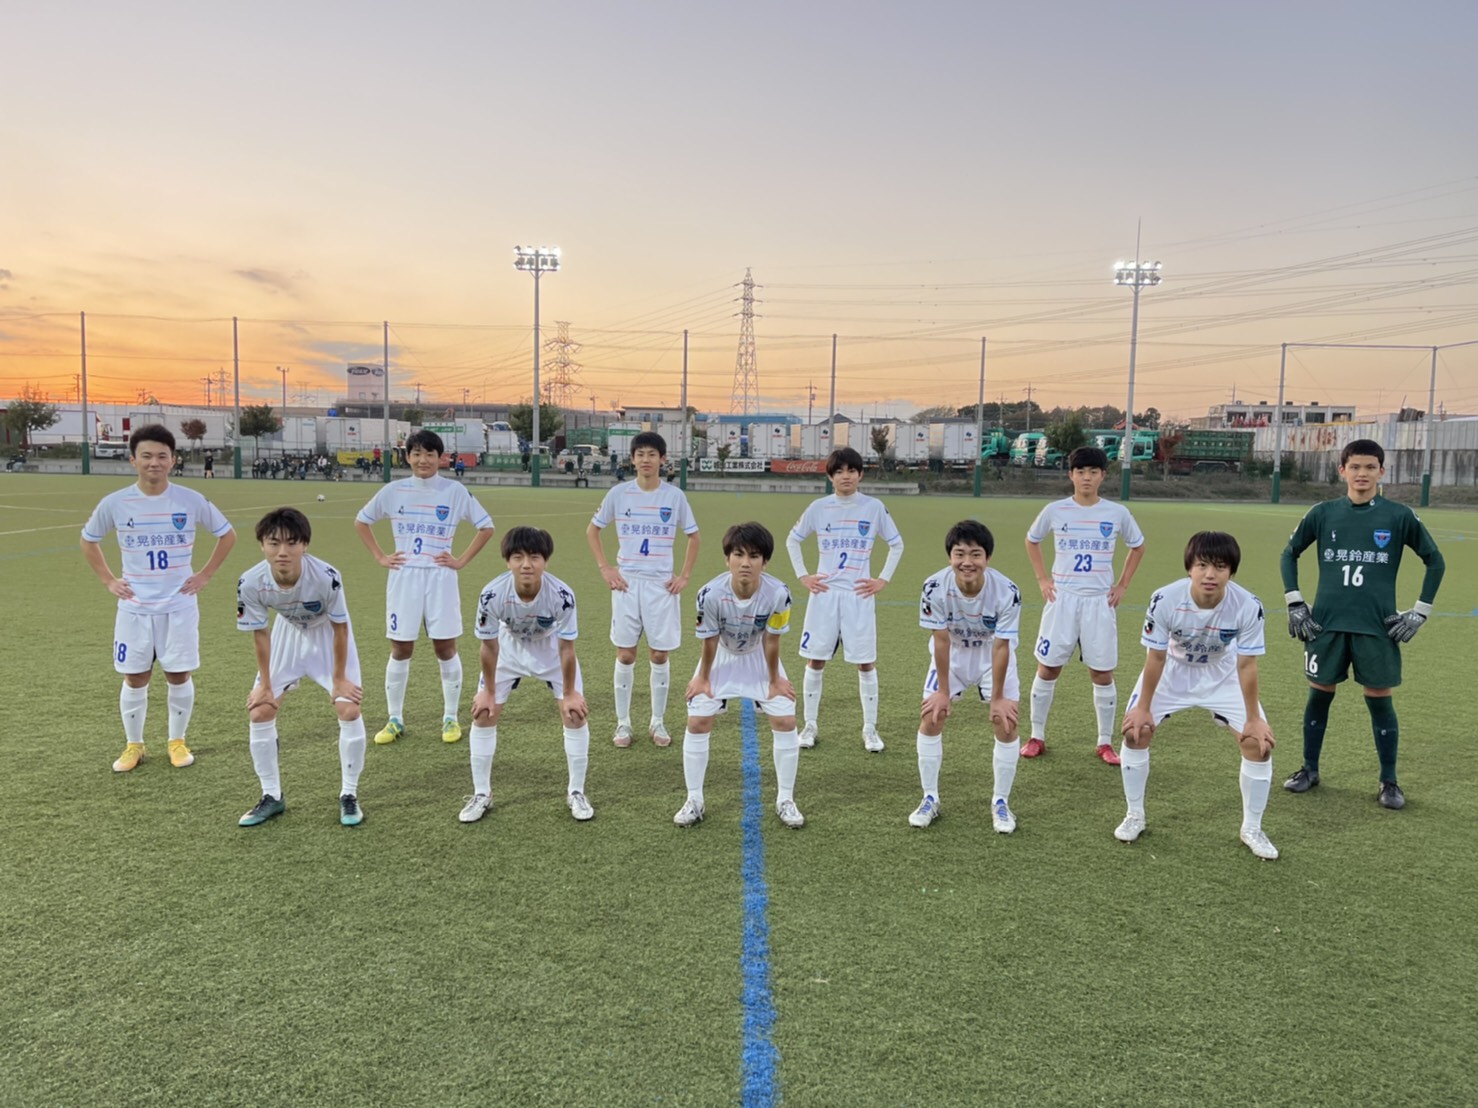 高円宮杯jfa U 15サッカーリーグ 神奈川県大会 試合結果 横浜fcオフィシャルウェブサイト